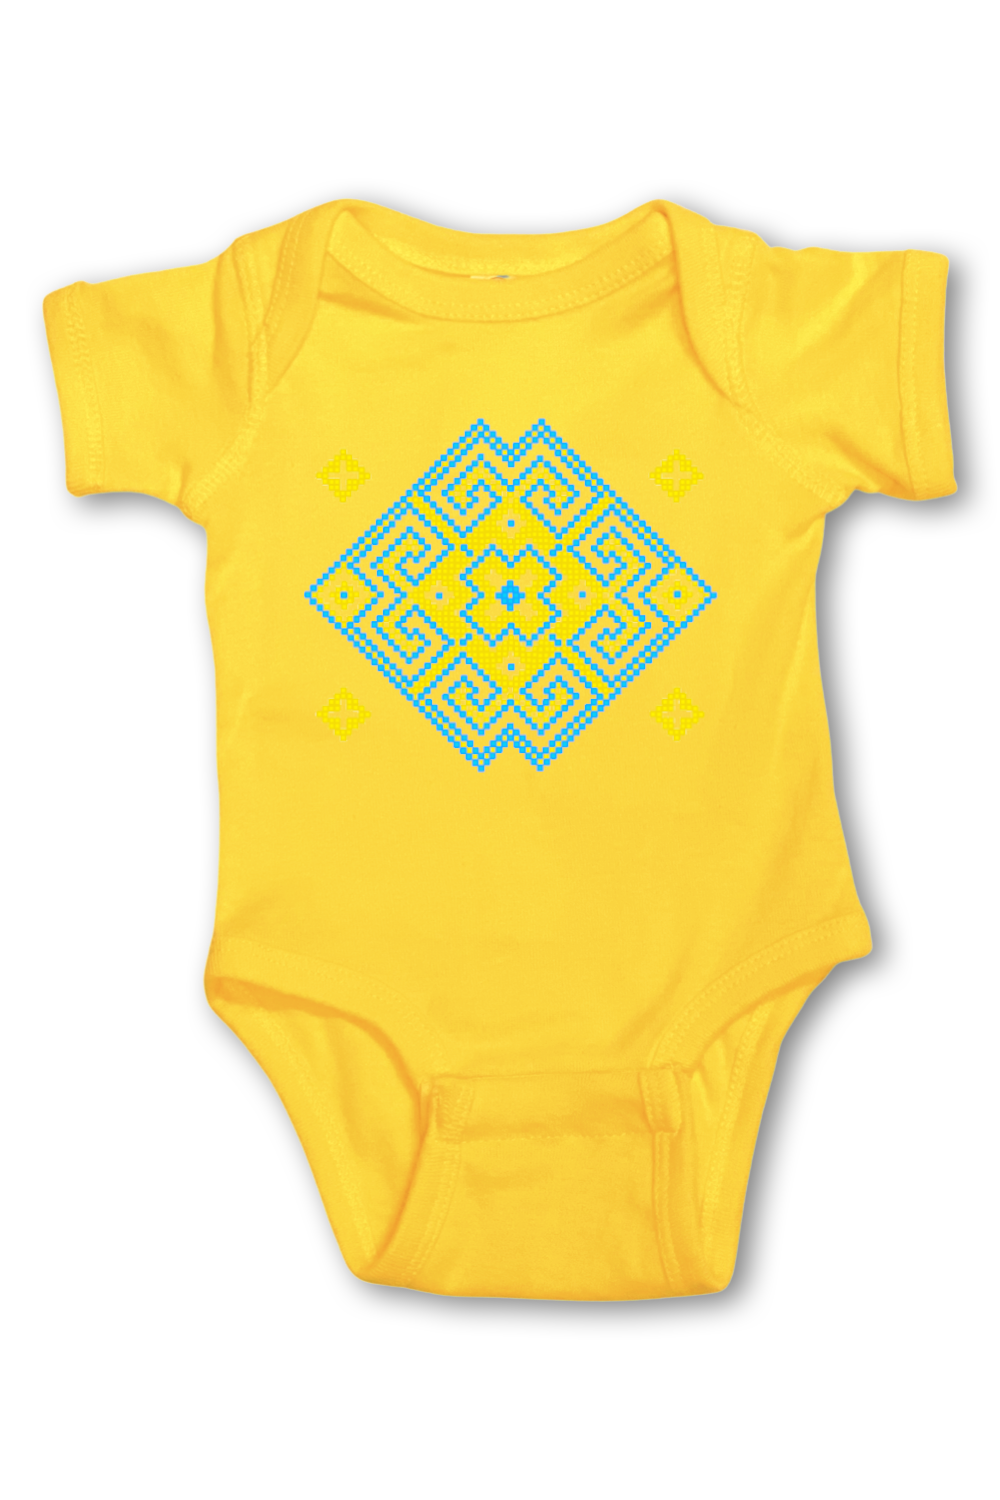 Infant onesie "Vortex" yellow